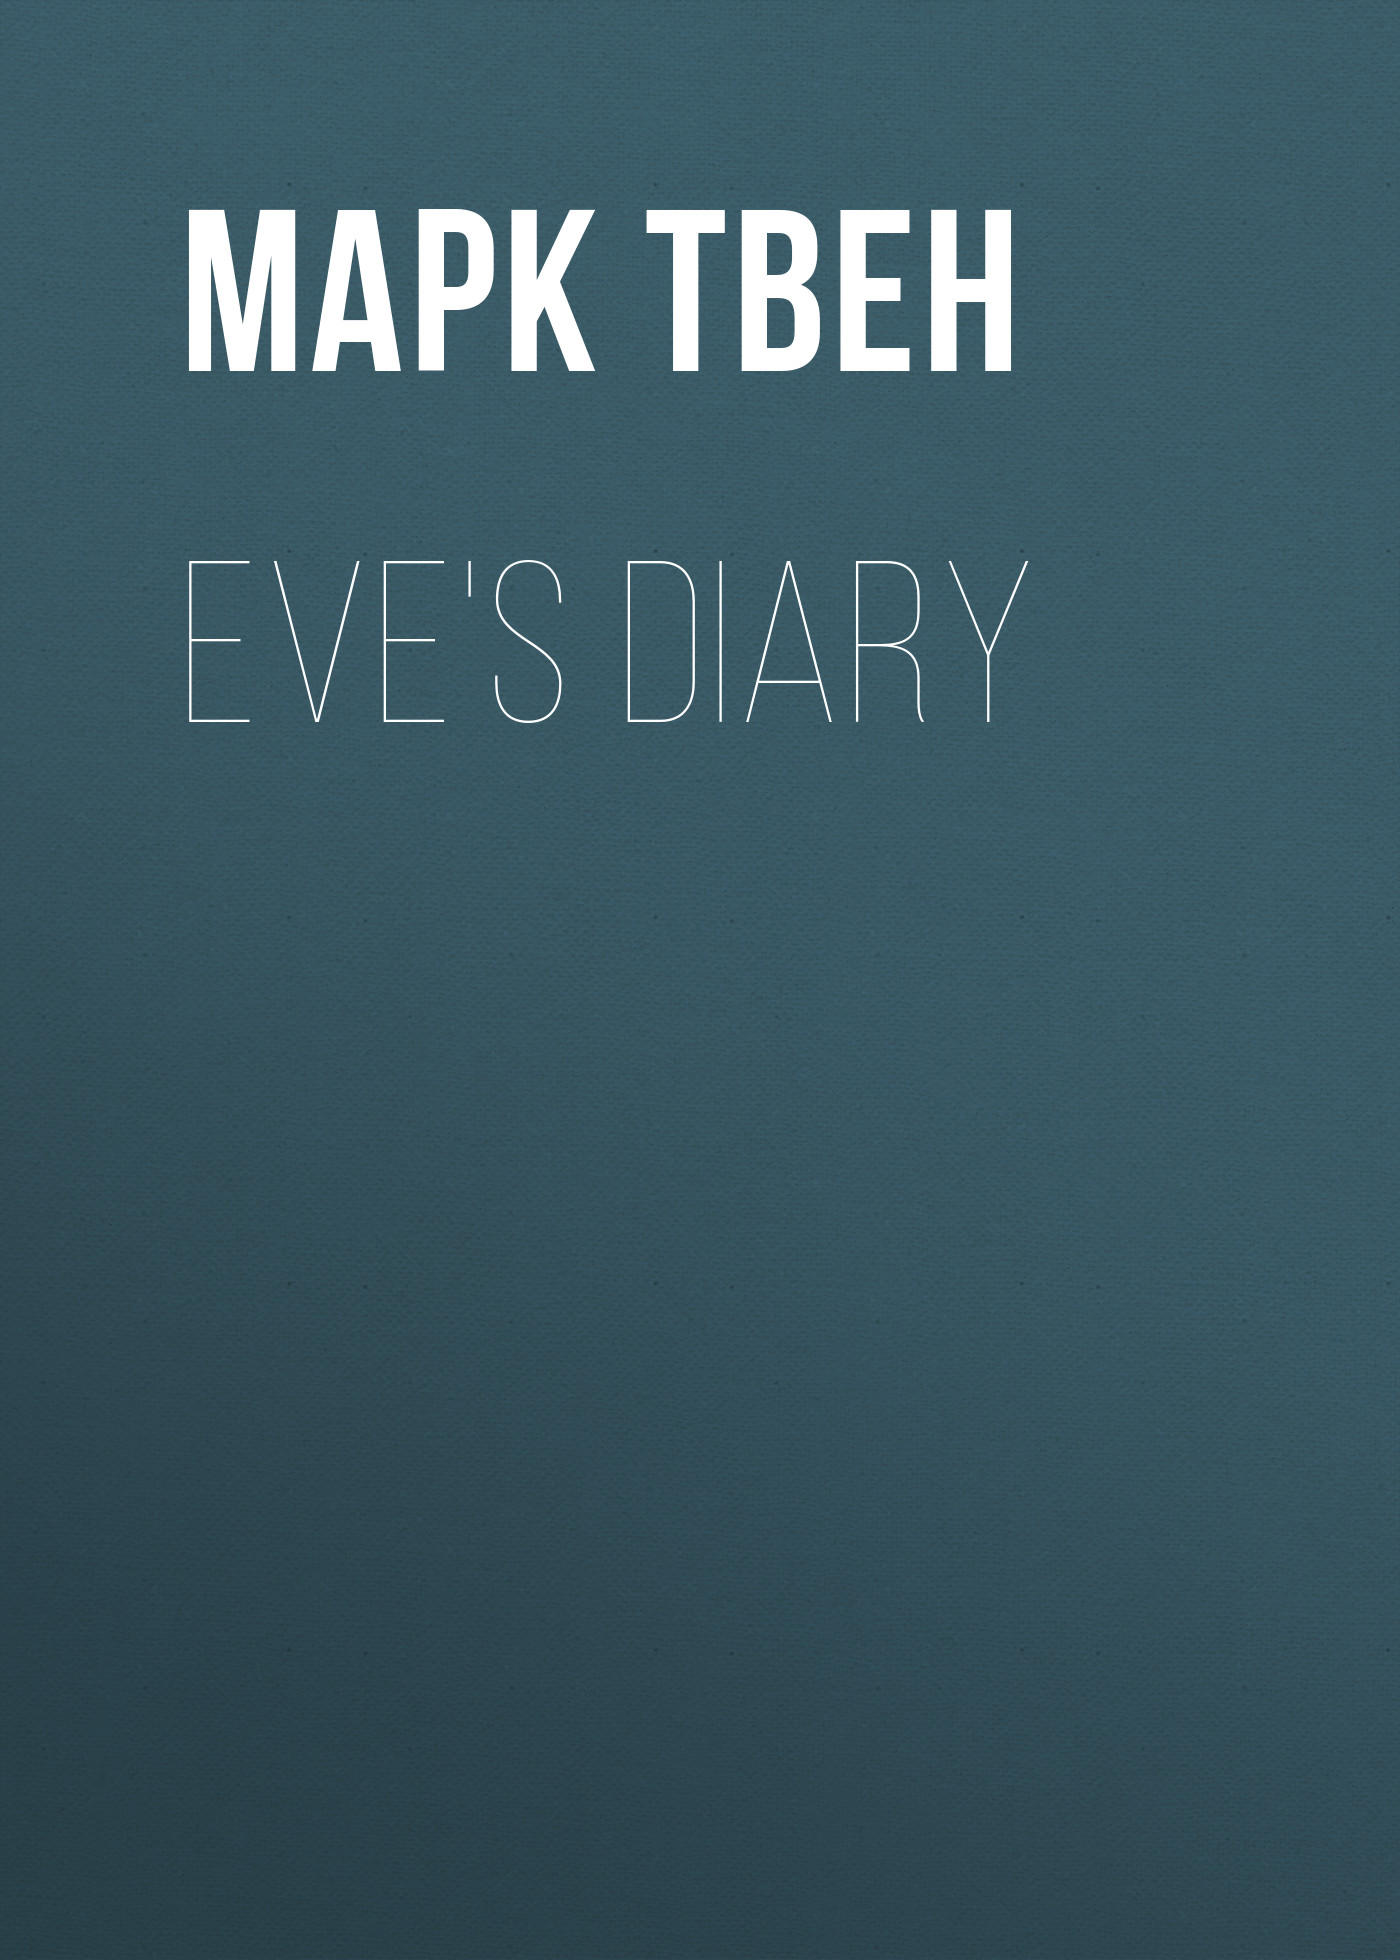 Книга Eve's Diary из серии , созданная Марк Твен, может относится к жанру Зарубежная старинная литература, Зарубежная классика. Стоимость электронной книги Eve's Diary с идентификатором 25475823 составляет 0 руб.